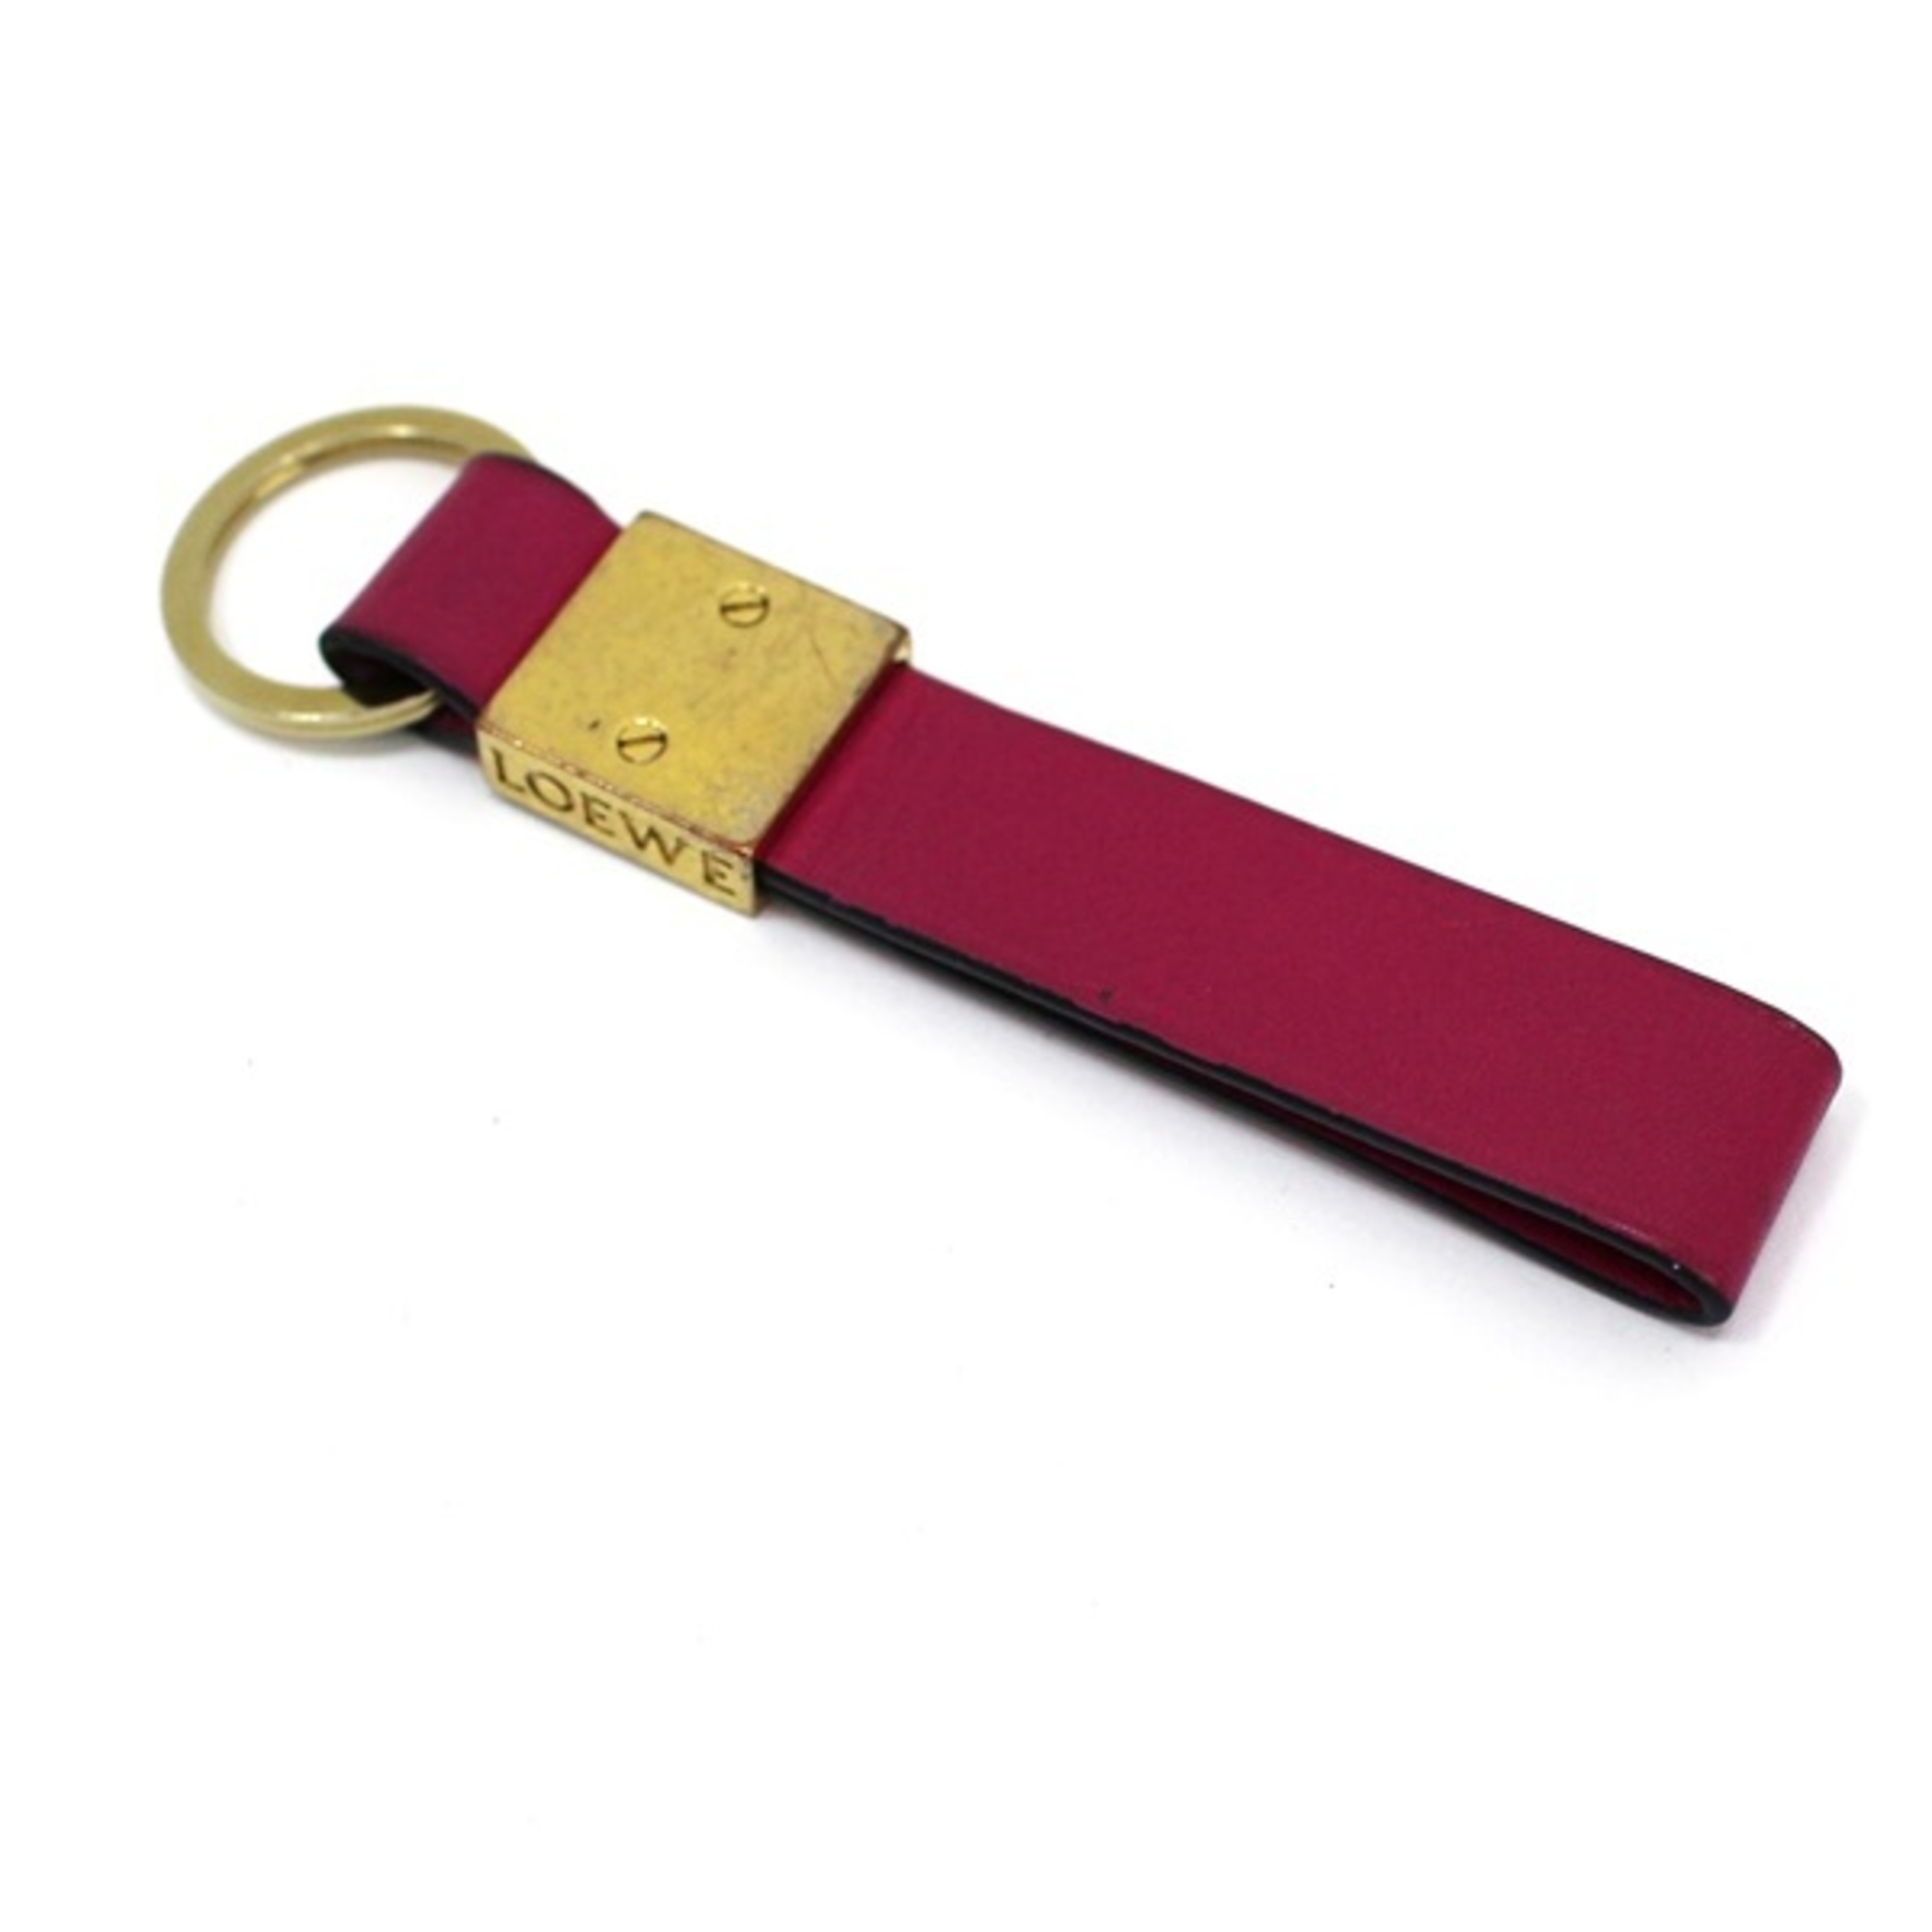 Loewe key ring holder leather purple LOEWE ladies